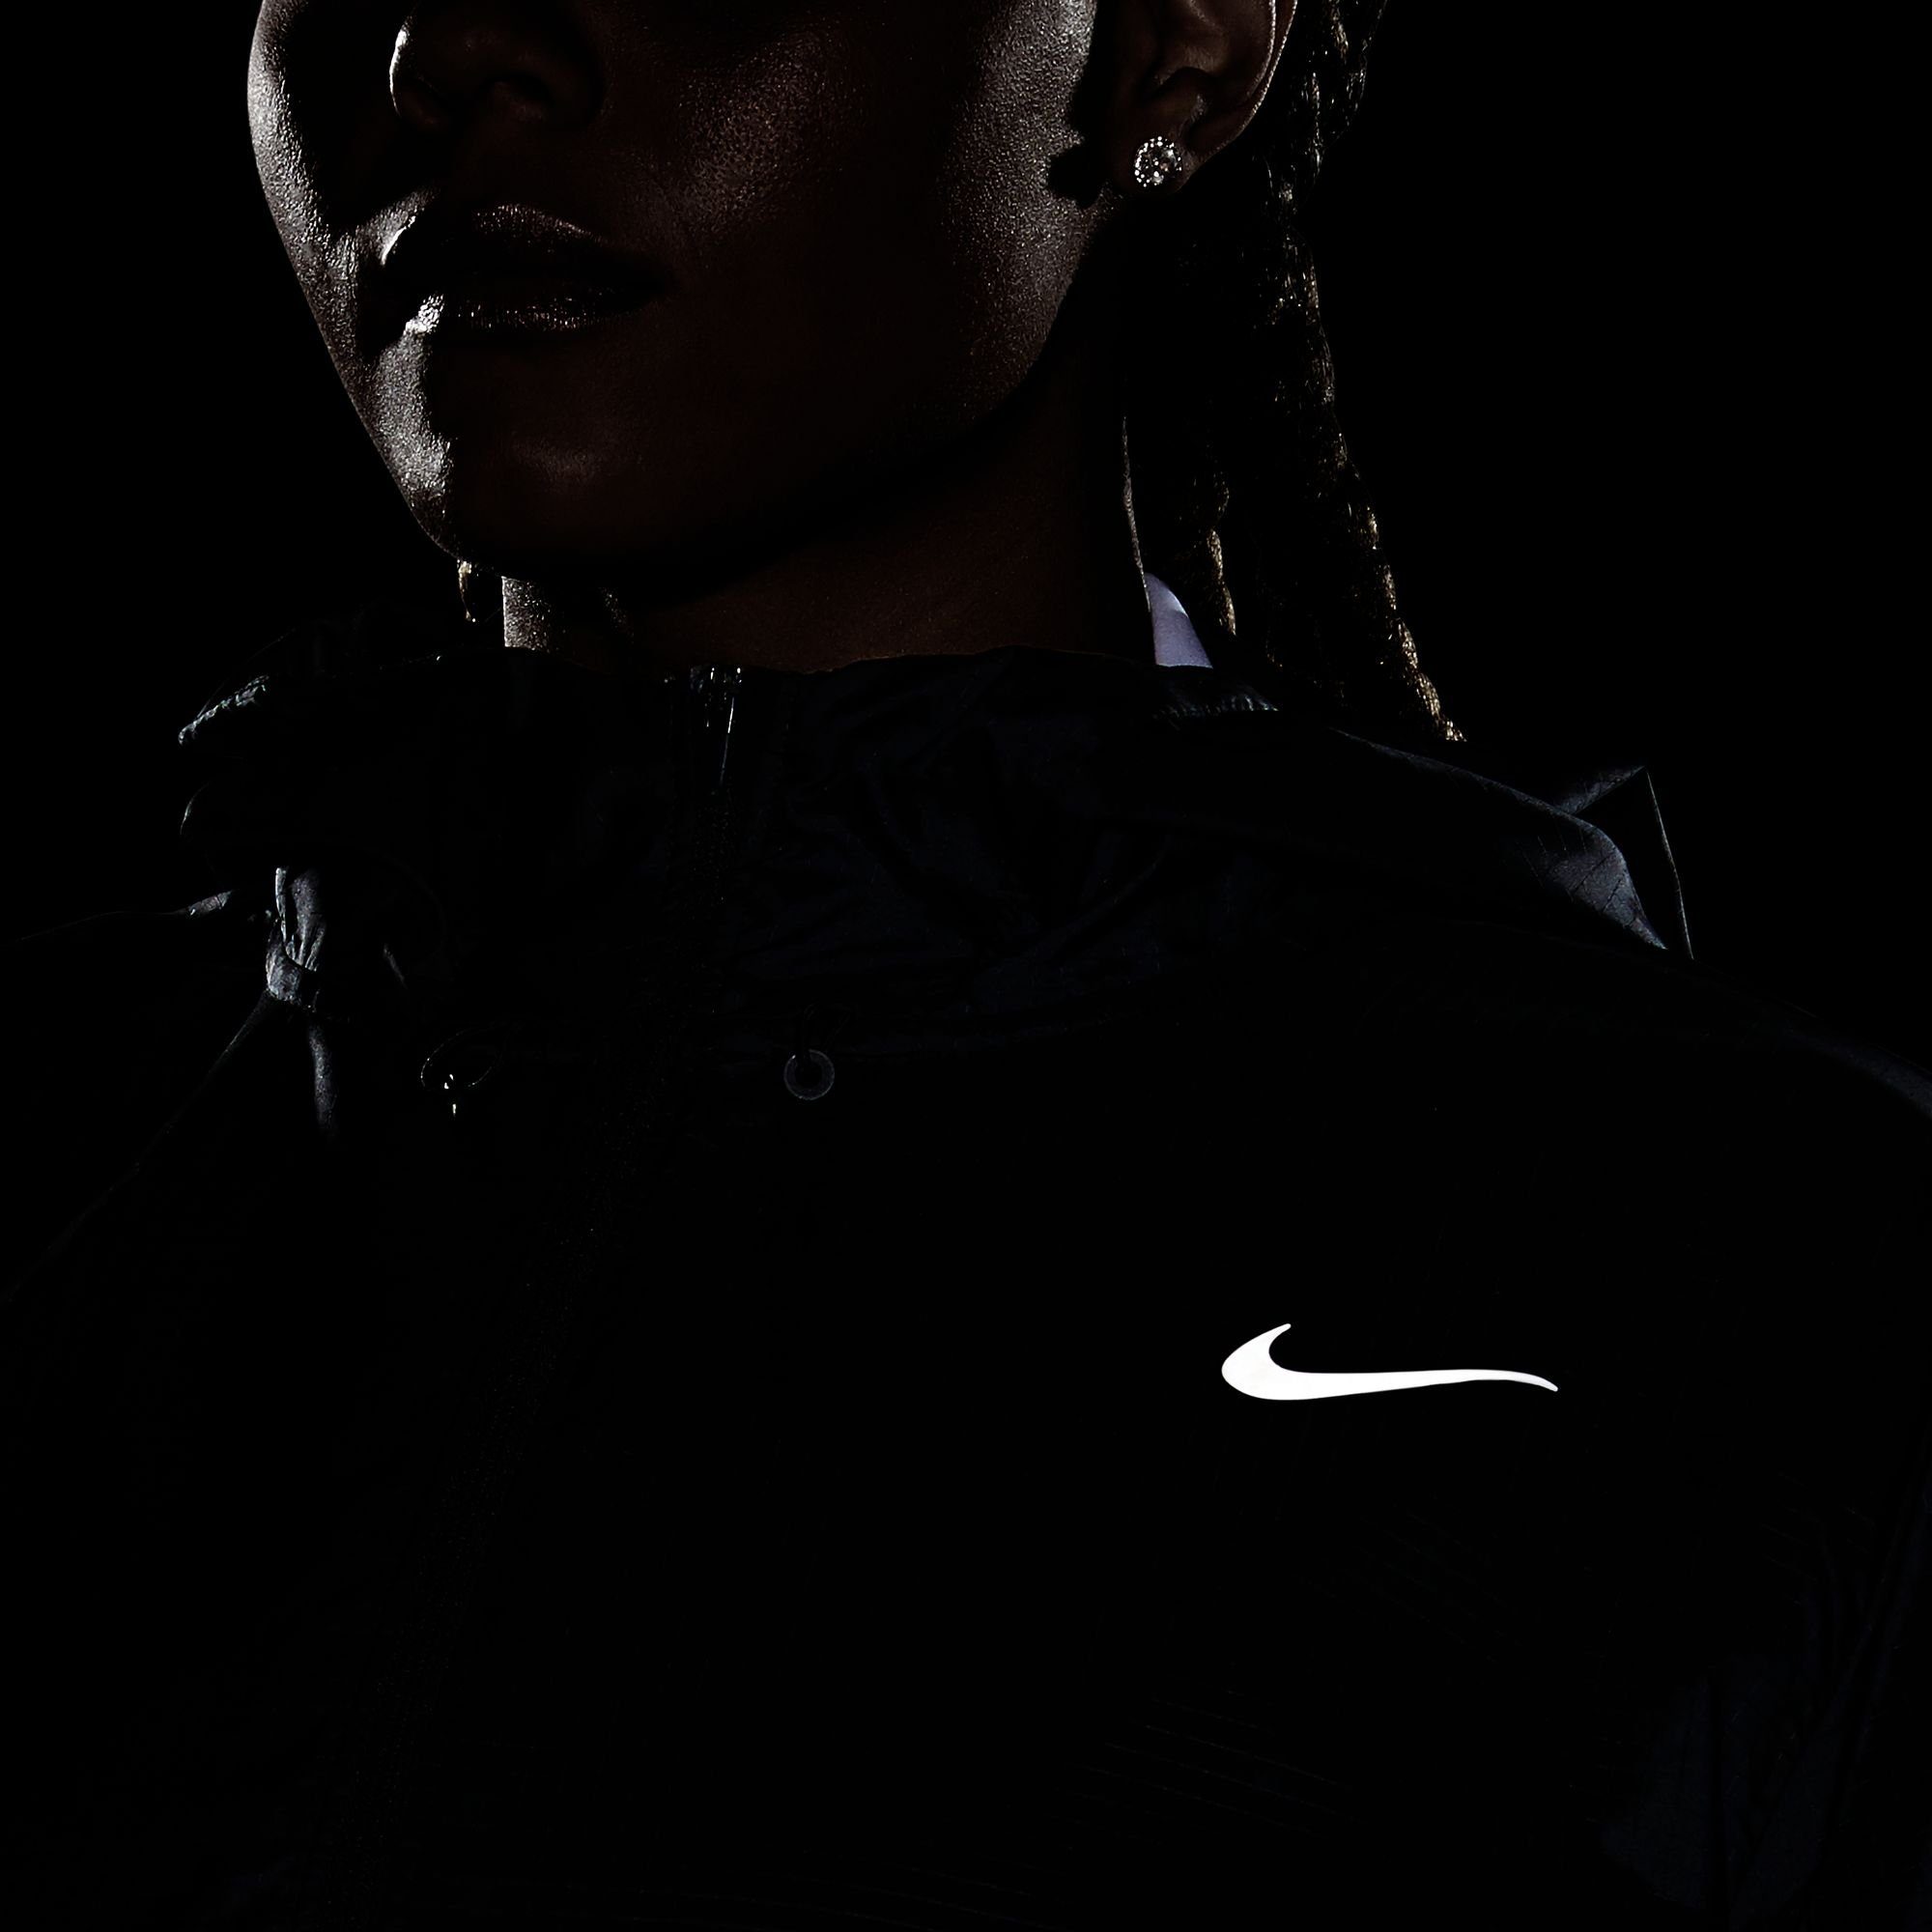 Jacket Running schwarz Essential Nike Women's Laufjacke